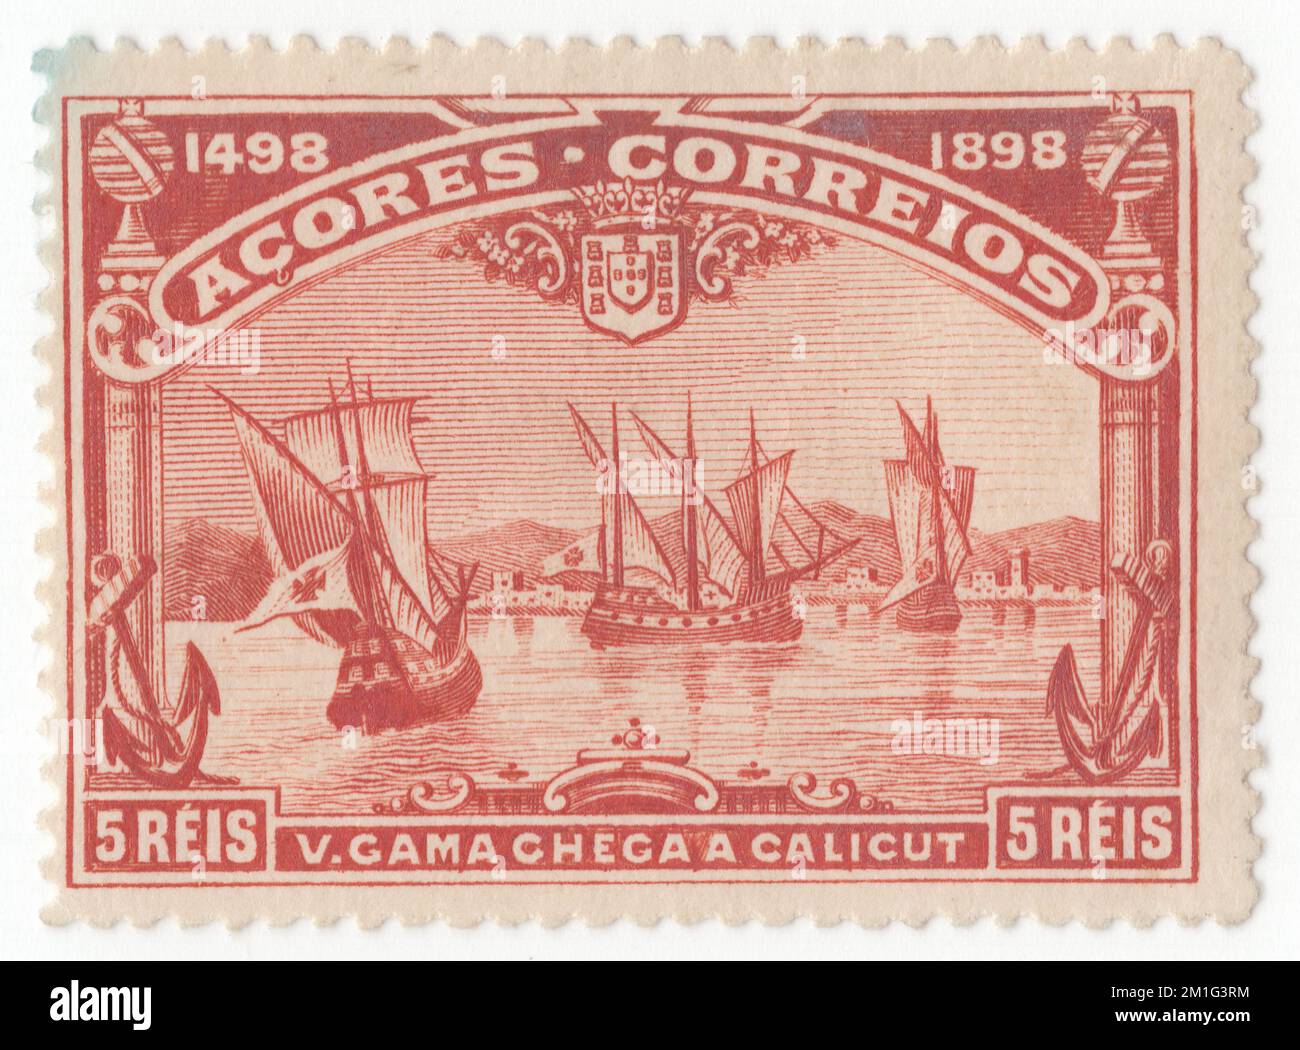 AÇORES - 1898 1 avril : timbre-poste rouge reis de 5 représentant la flotte arrivant à Calicut. Numéro de Vasco da Gama, quatrième centenaire de la découverte par Vasco da Gama de la route vers l’Inde. Le voyage de Vasco da Gama en Inde en 1497-1498 a fait l'objet d'une question de 1898. Les dessins de Vasco da Gama ont également été utilisés dans les colonies africaines et ont été inscrits en Afrique au lieu du Portugal. C'était la seule question générale pour les colonies. Vasco da Gama, 1st comte de Vidigueira, était un explorateur portugais et le premier européen à atteindre l'Inde par mer. Son voyage initial en Inde en passant par le cap de bonne espérance Banque D'Images